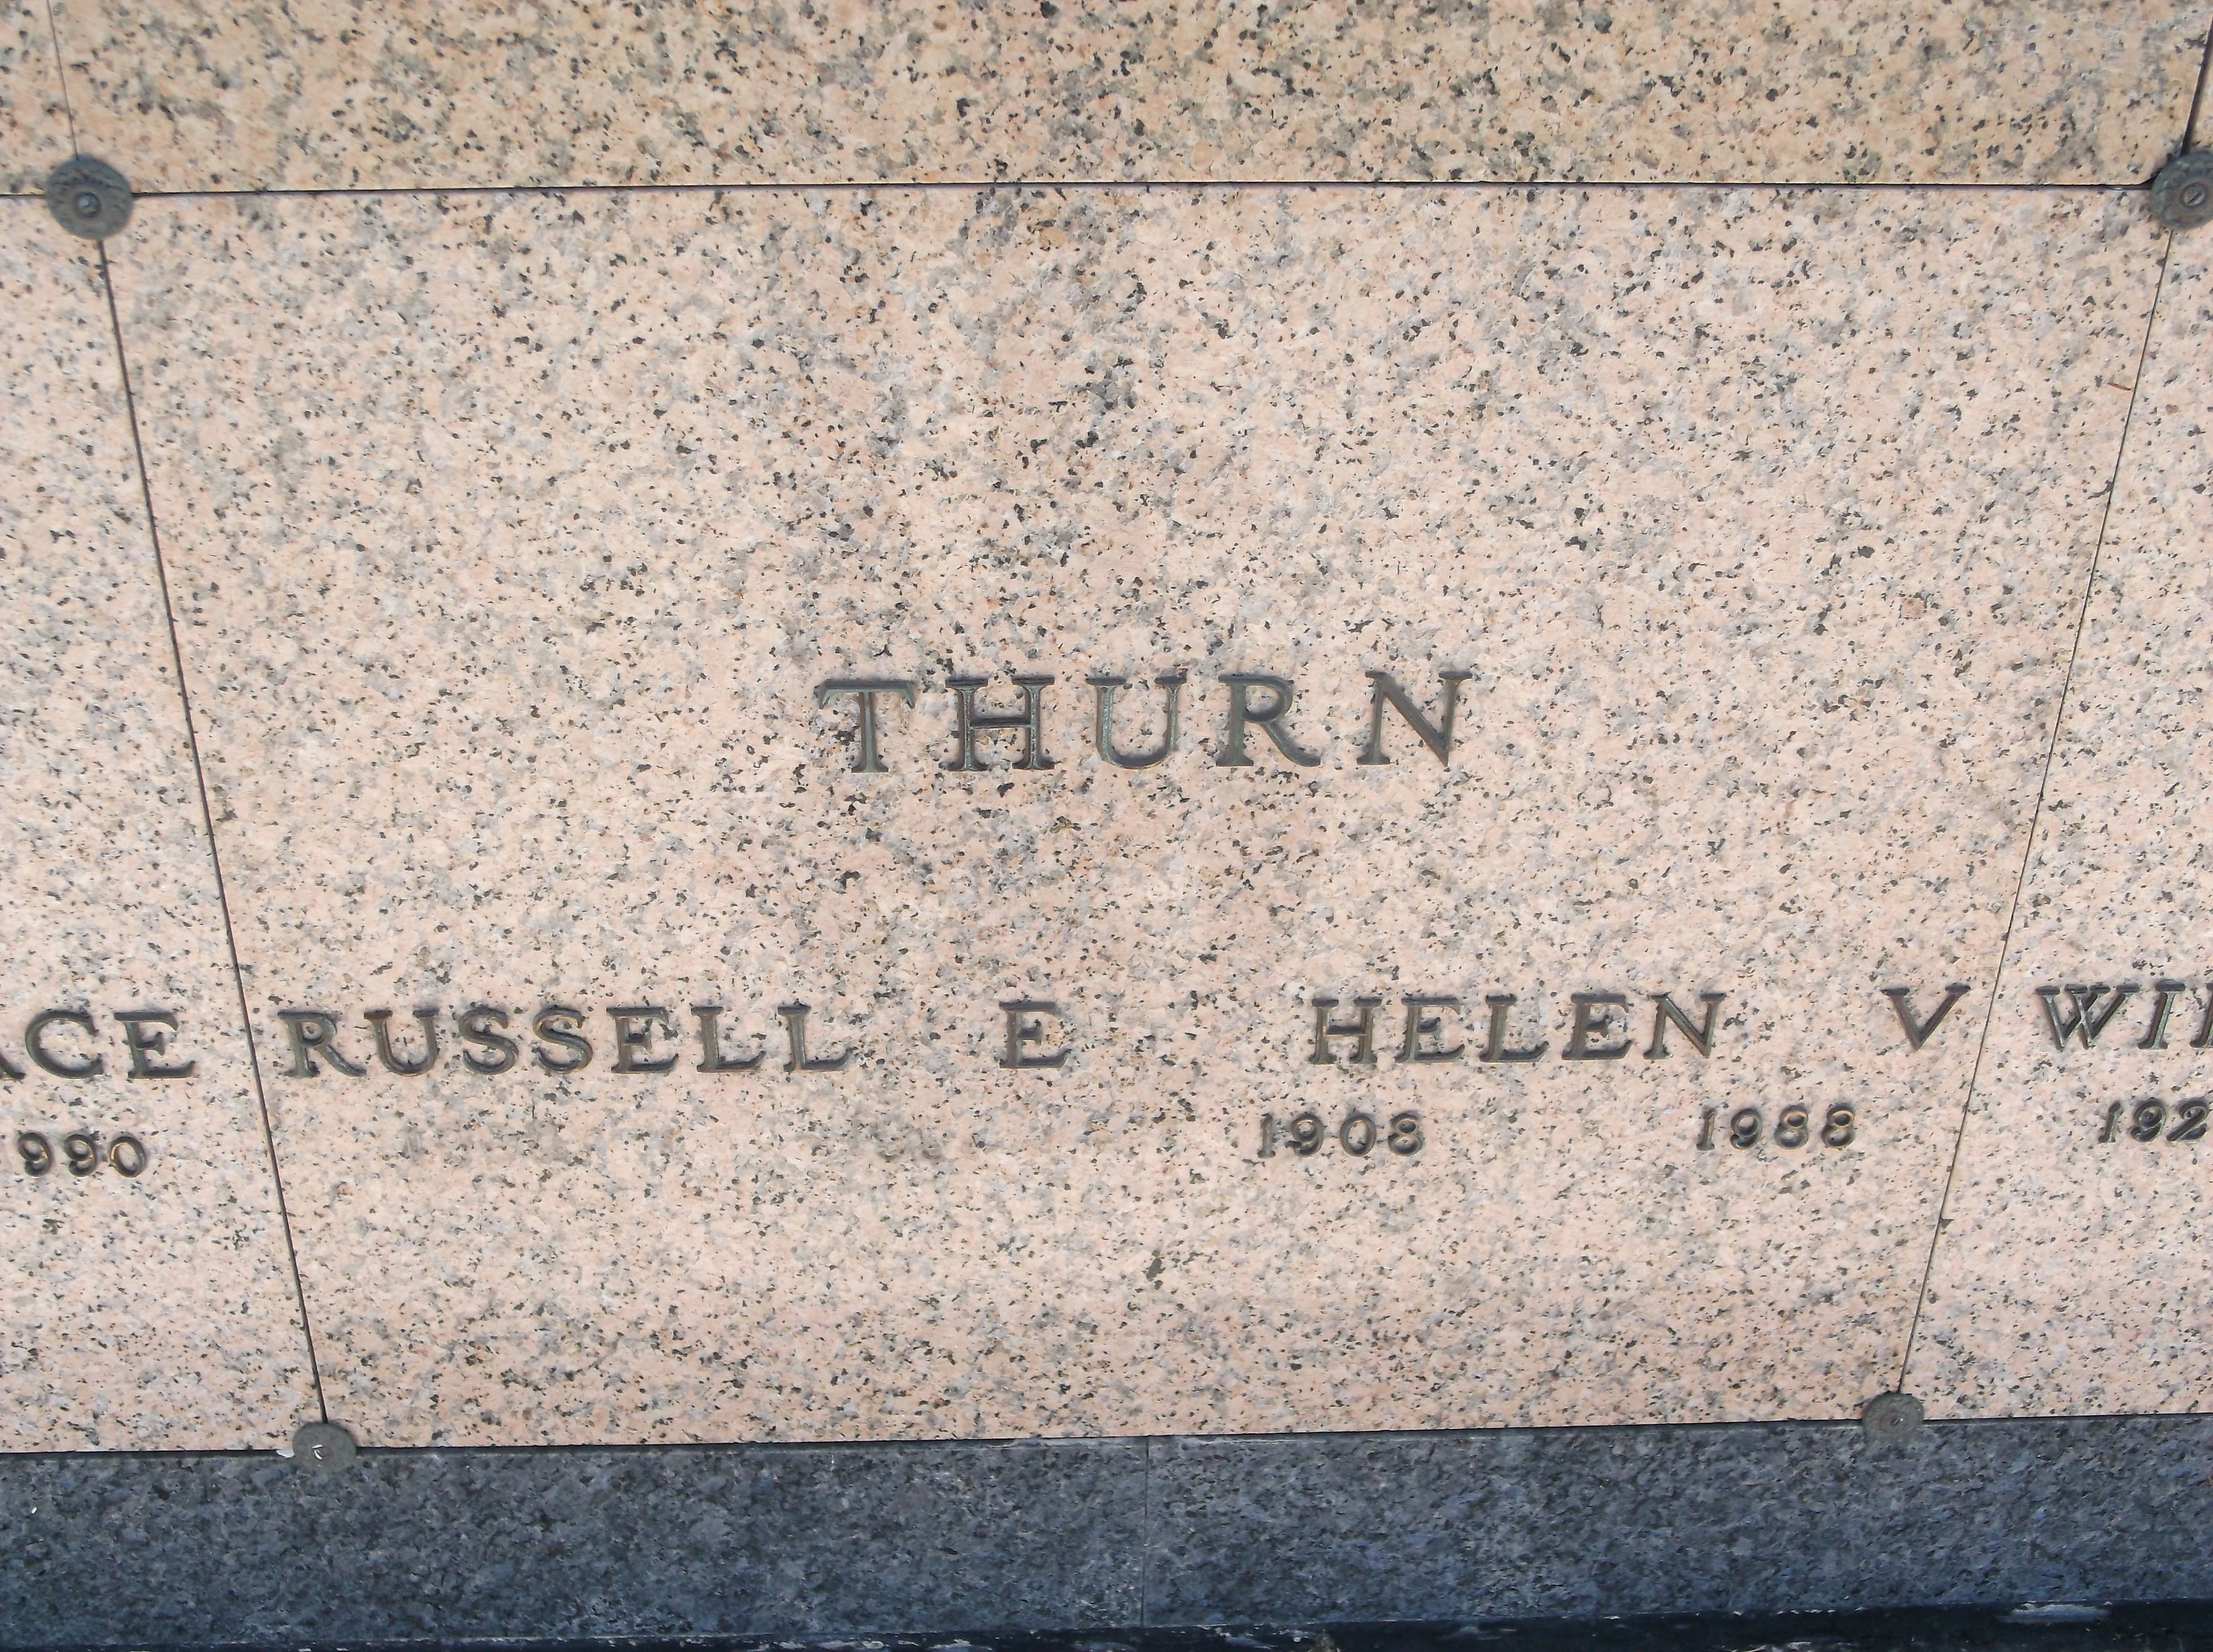 Helen V Thurn